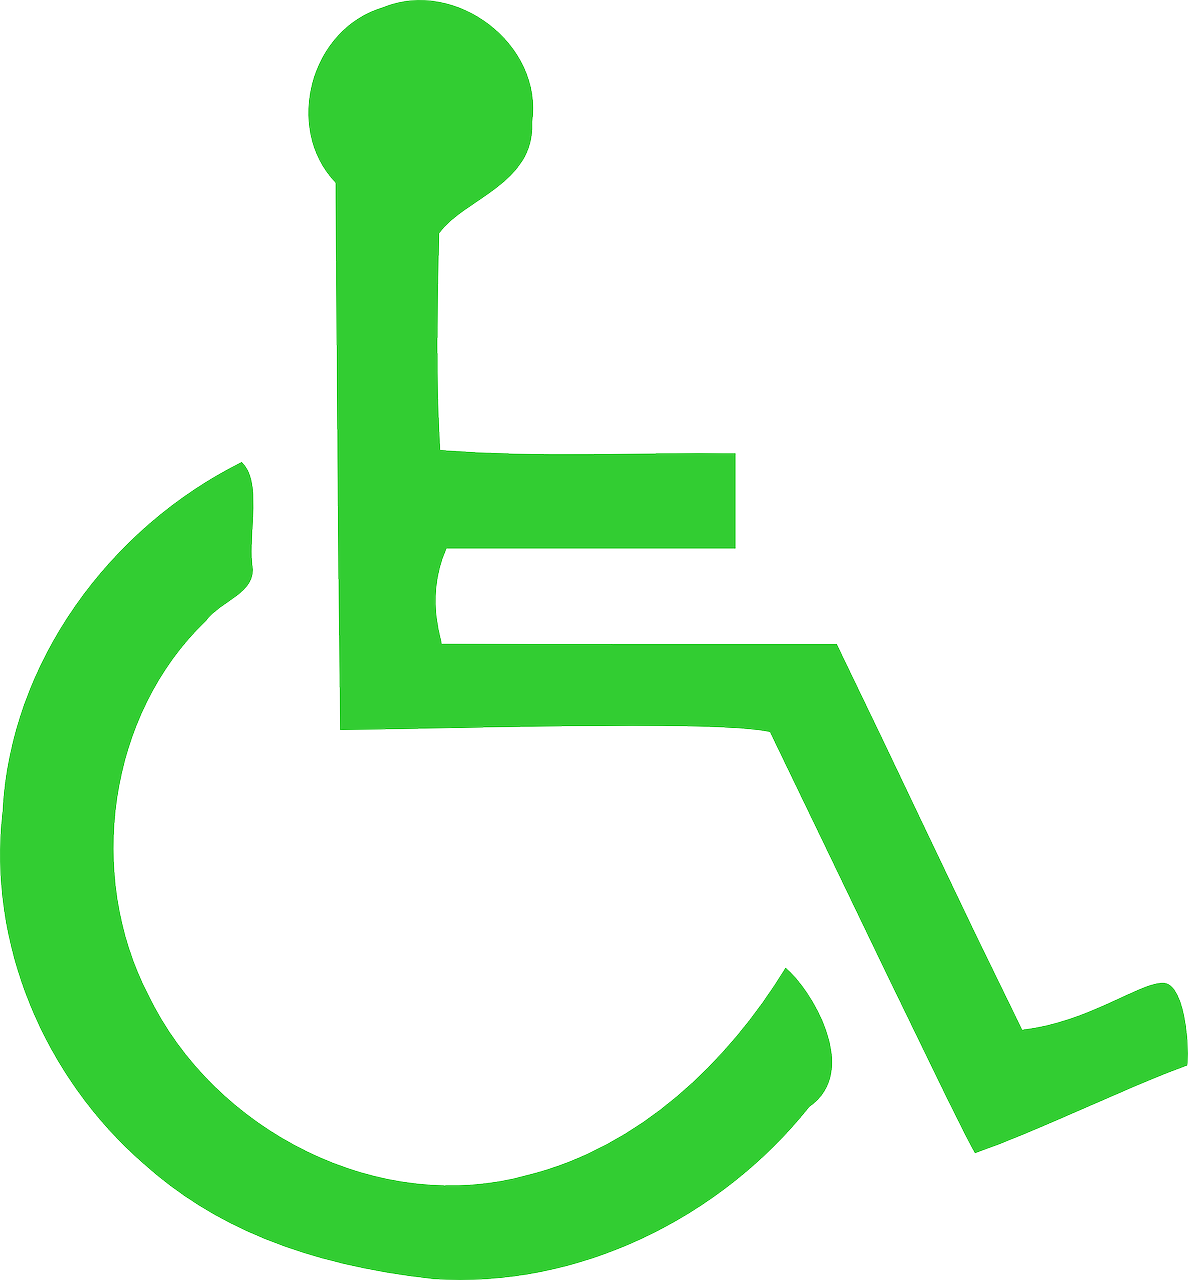 Marlot zorgt ervaring instelling gehandicaptenzorg verstandelijk gehandicapten